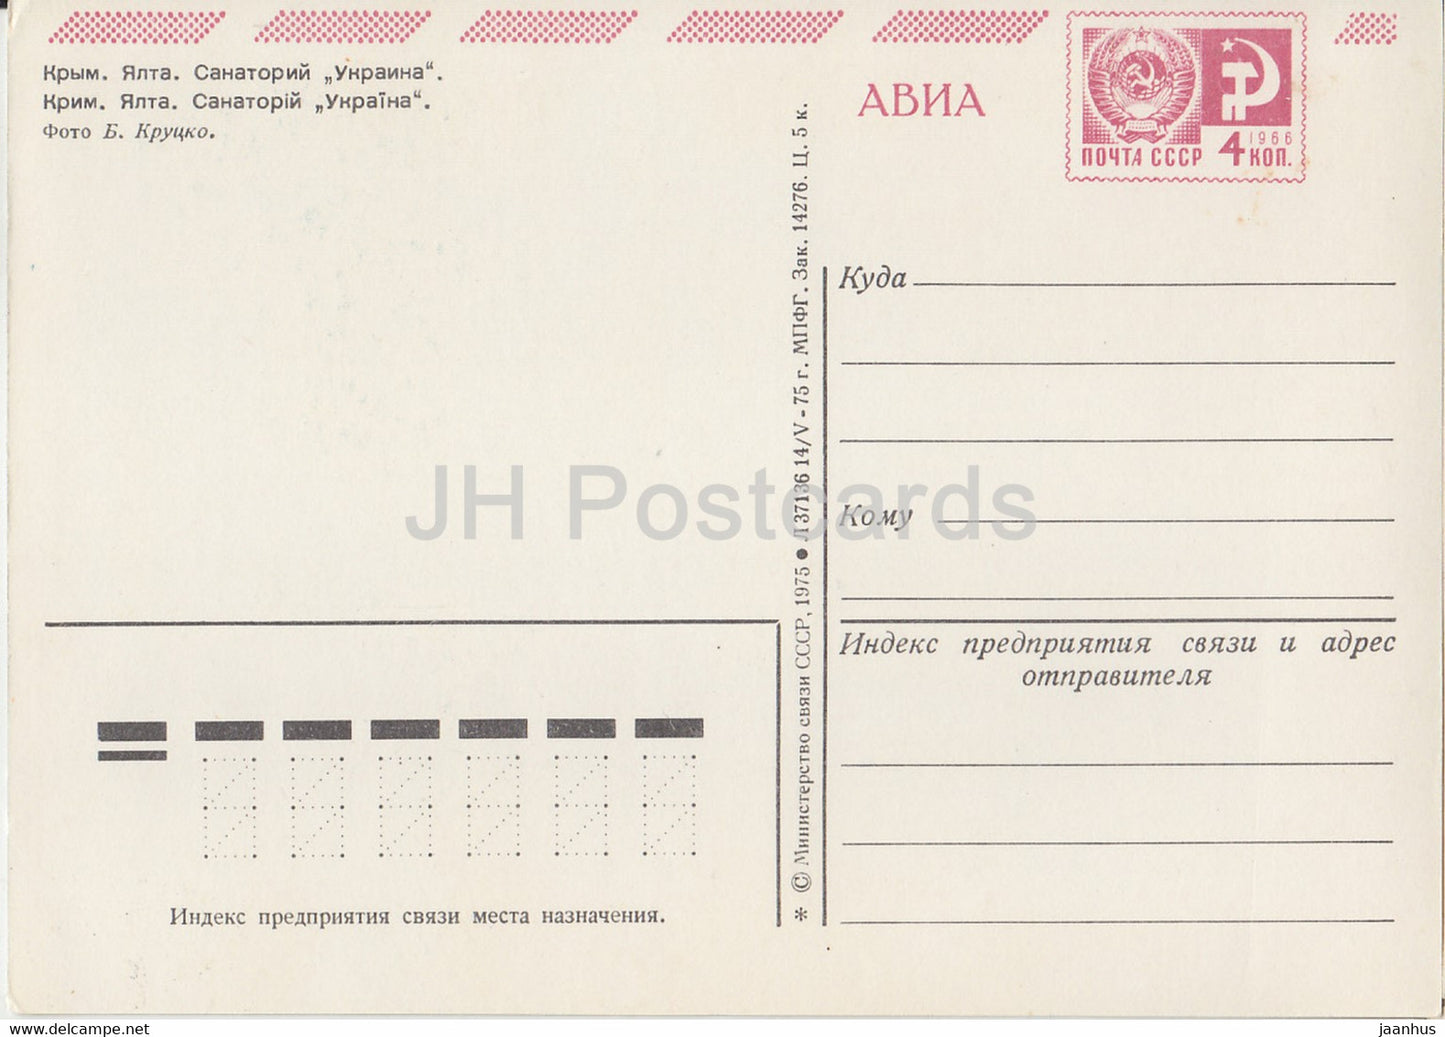 Crimée - Yalta - sanatorium Ukraina - AVIA - entier postal - 1975 - Ukraine URSS - inutilisé